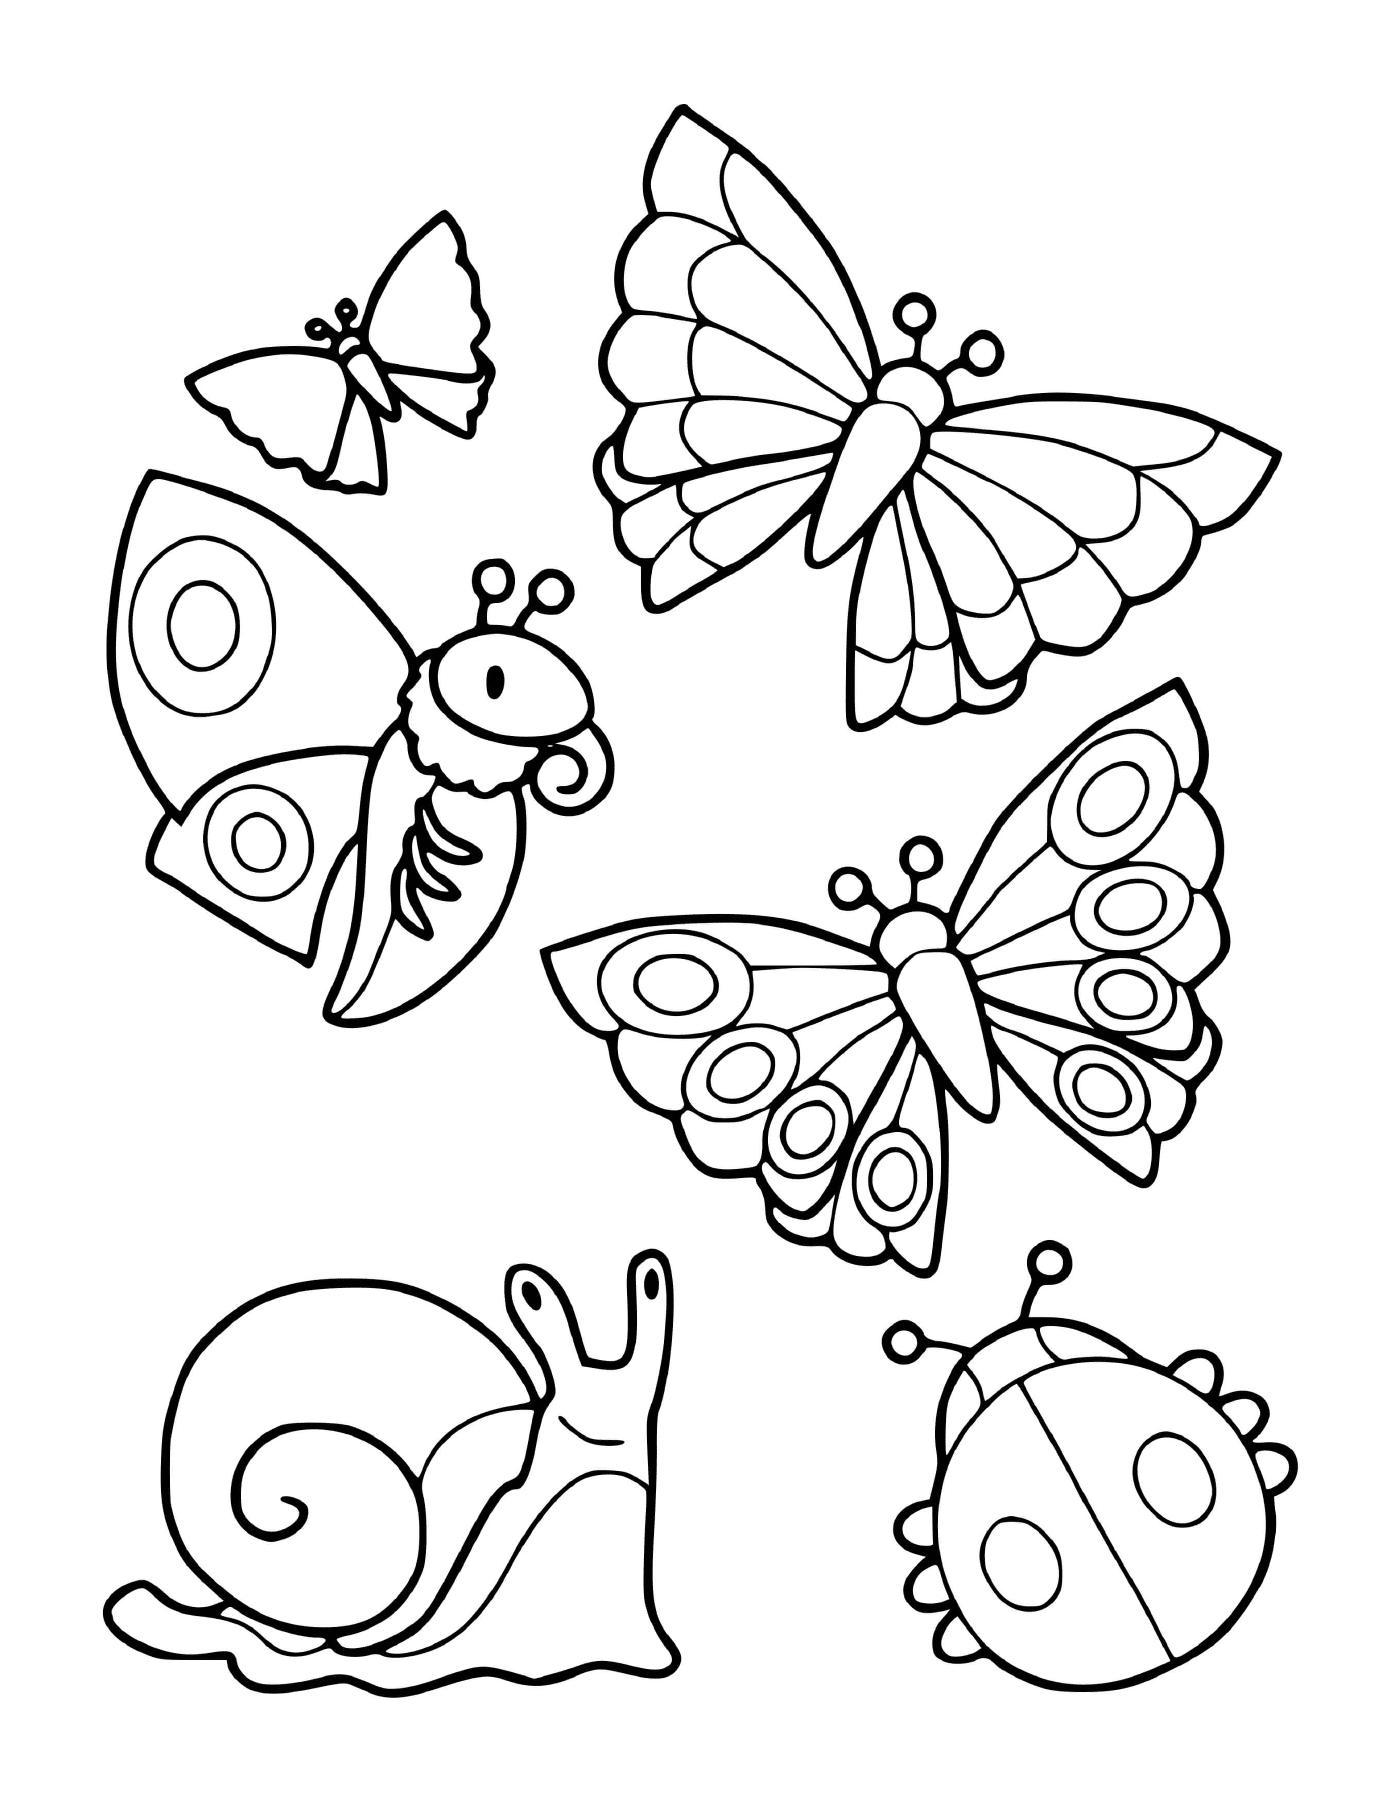  Una colección de insectos incluyendo mariposas y un caracol 